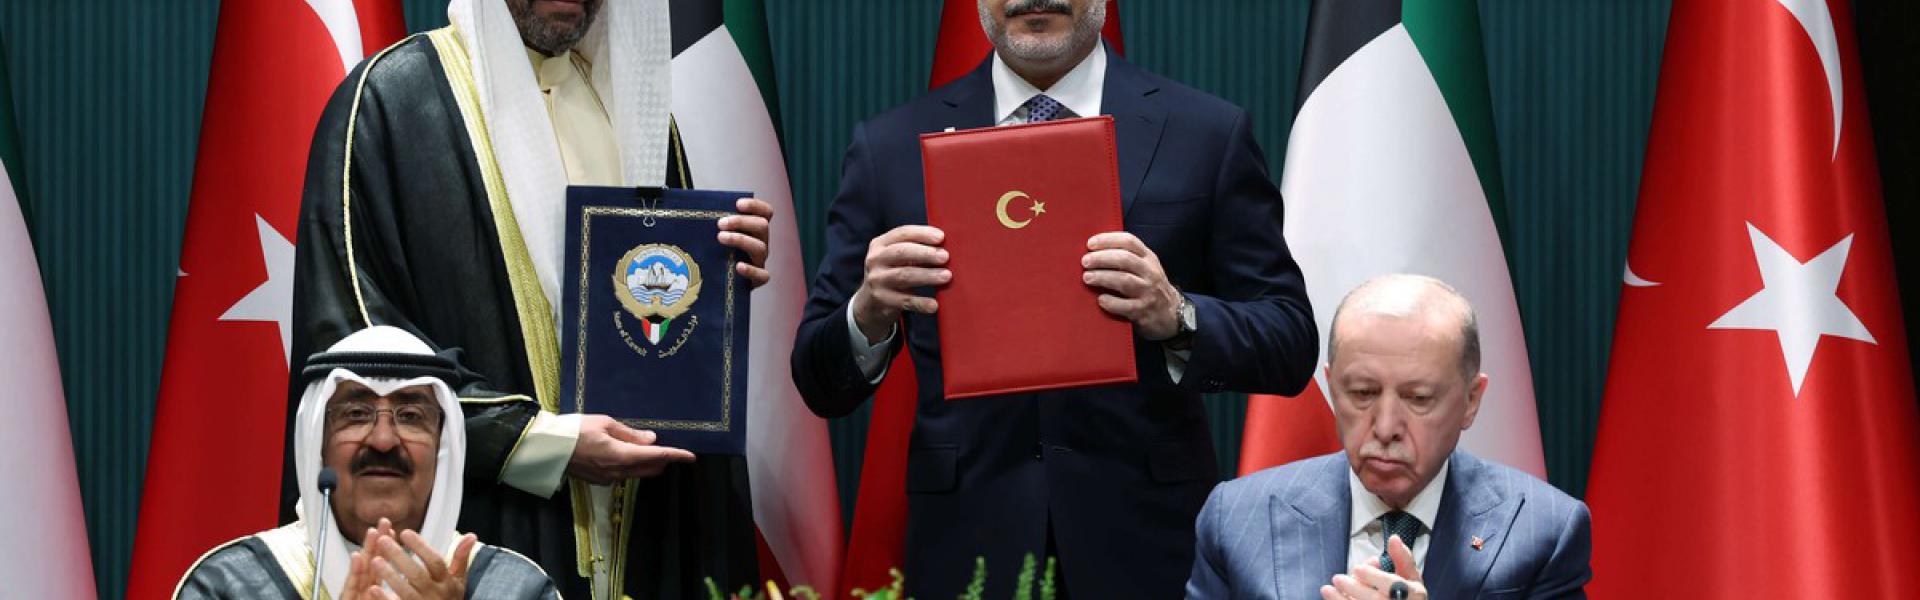 حرص مشترك بين الكويت وتركيا على تعزيز التعاون 